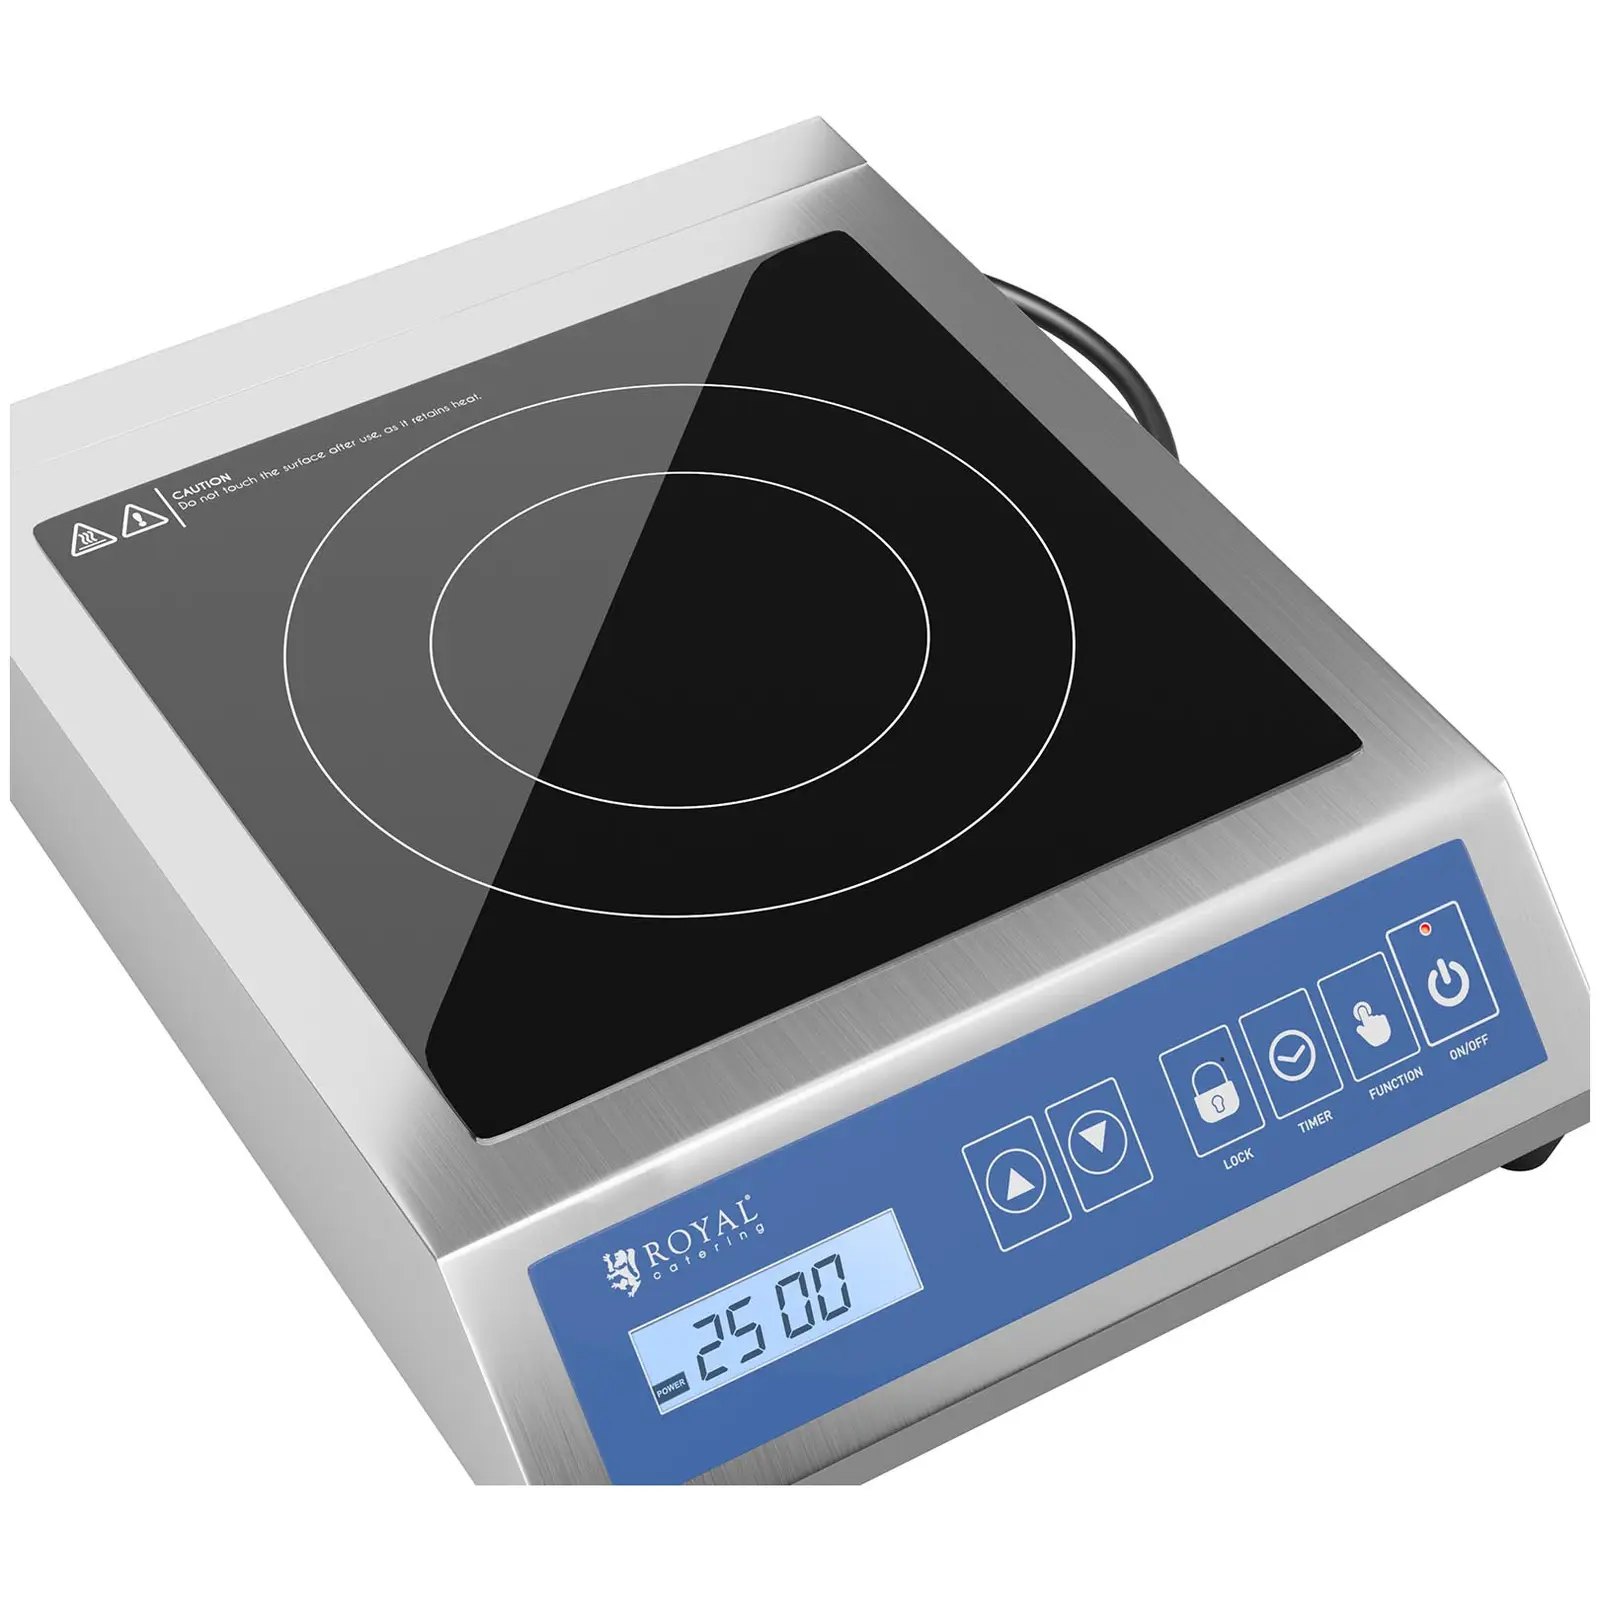 Induktionsplatte - 28 cm - 60 bis 240 °C - Touchdisplay - Timer